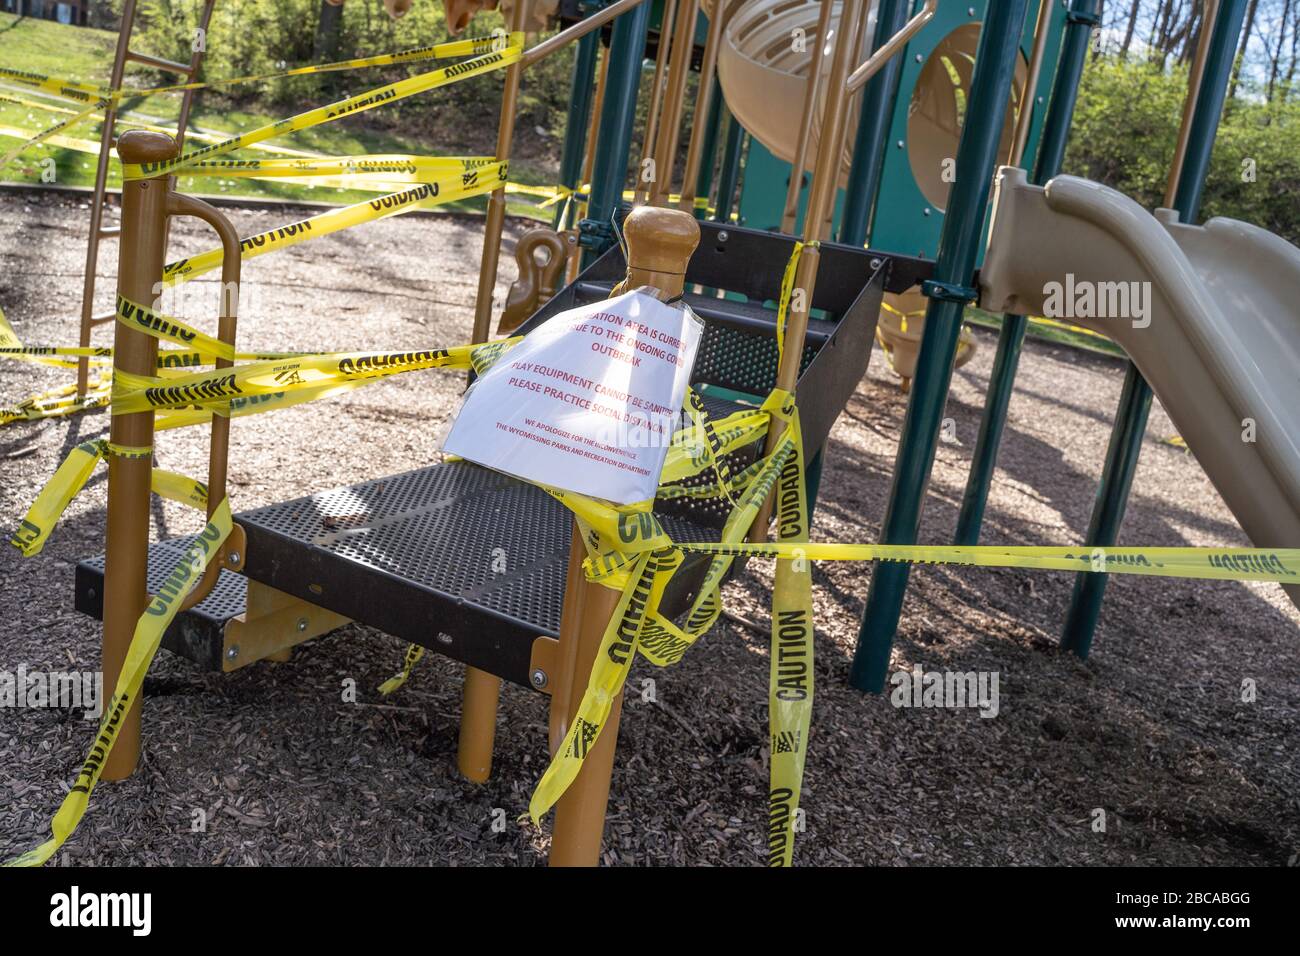 Berks County, Pennsylvanie, États-Unis-2 avril 2020: Aire de jeux publique fermée avec ruban de mise en garde pour que les enfants ne jouent pas sur l'équipement pour empêcher la propagation de la co Banque D'Images